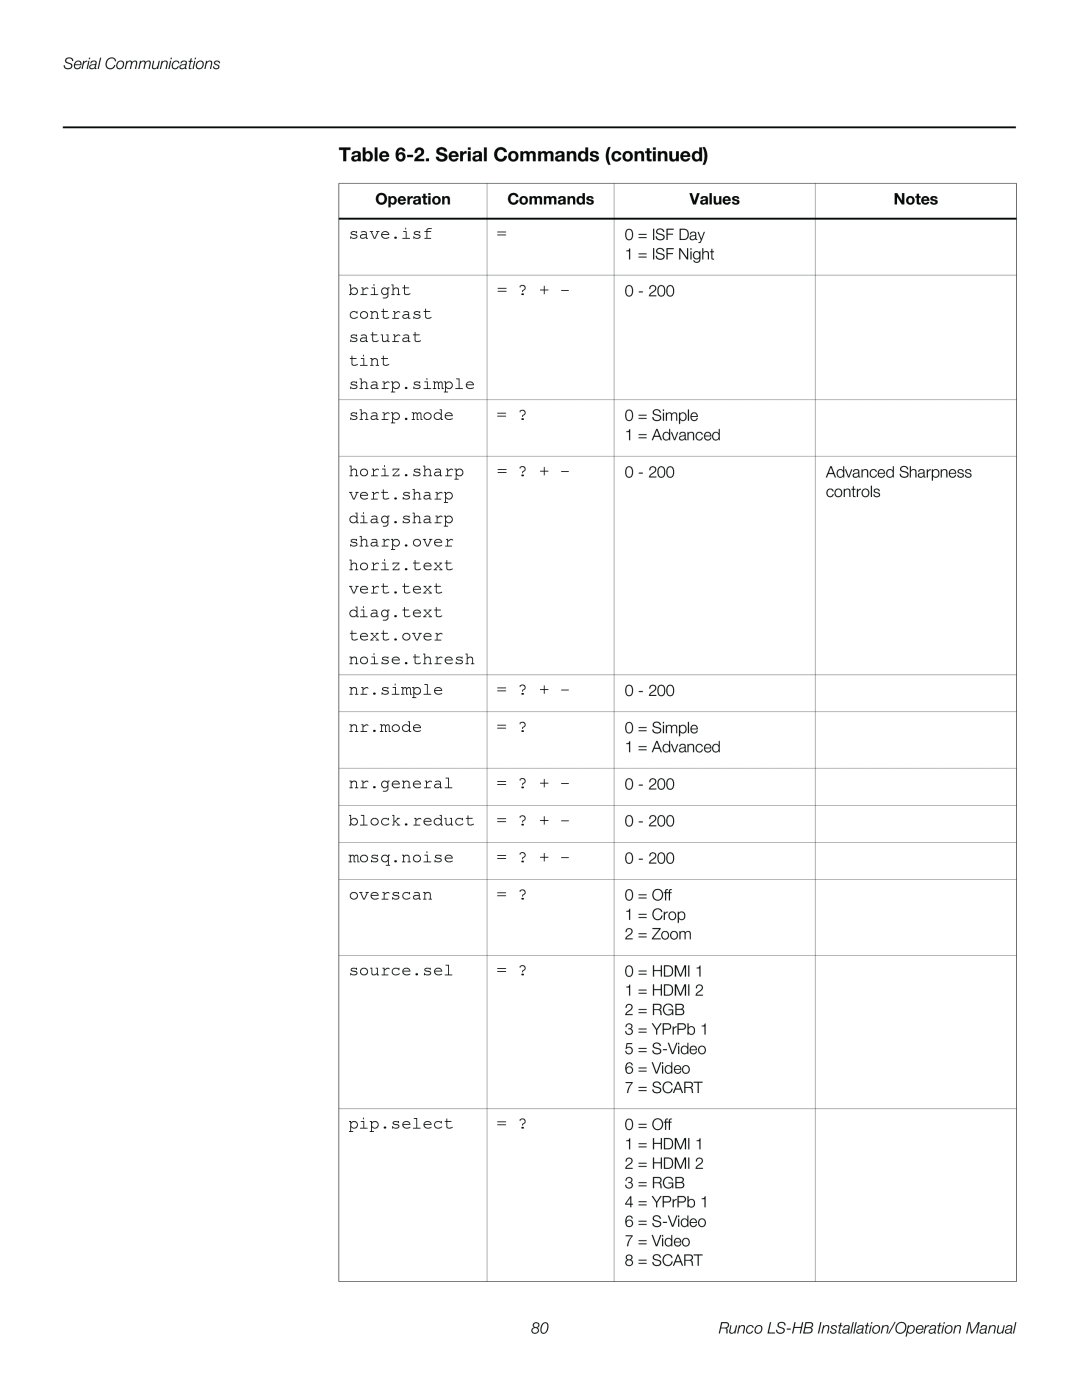 Runco LS-HB operation manual 2. Serial Commands continued 